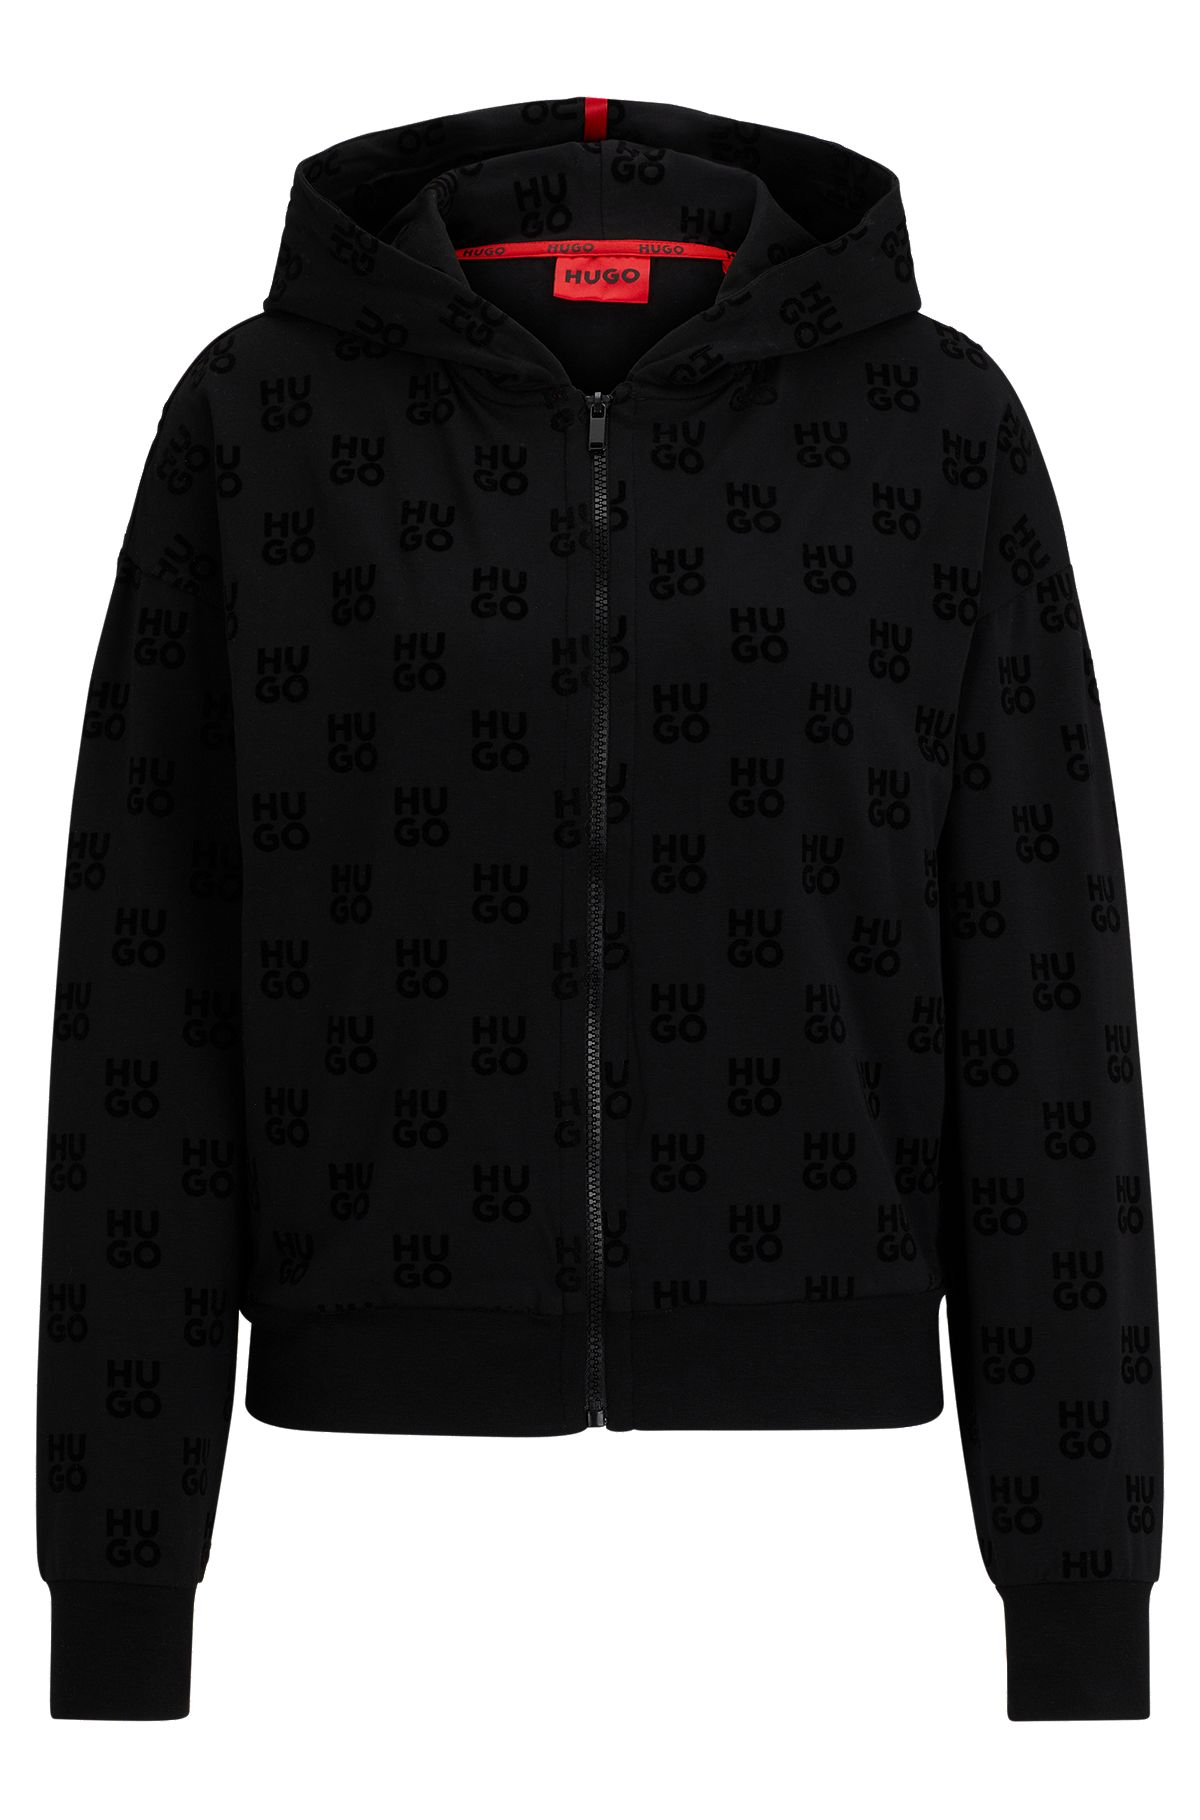 Louis Vuitton Grey Cashmere & Cotton Hooded Zip Front Jacket L